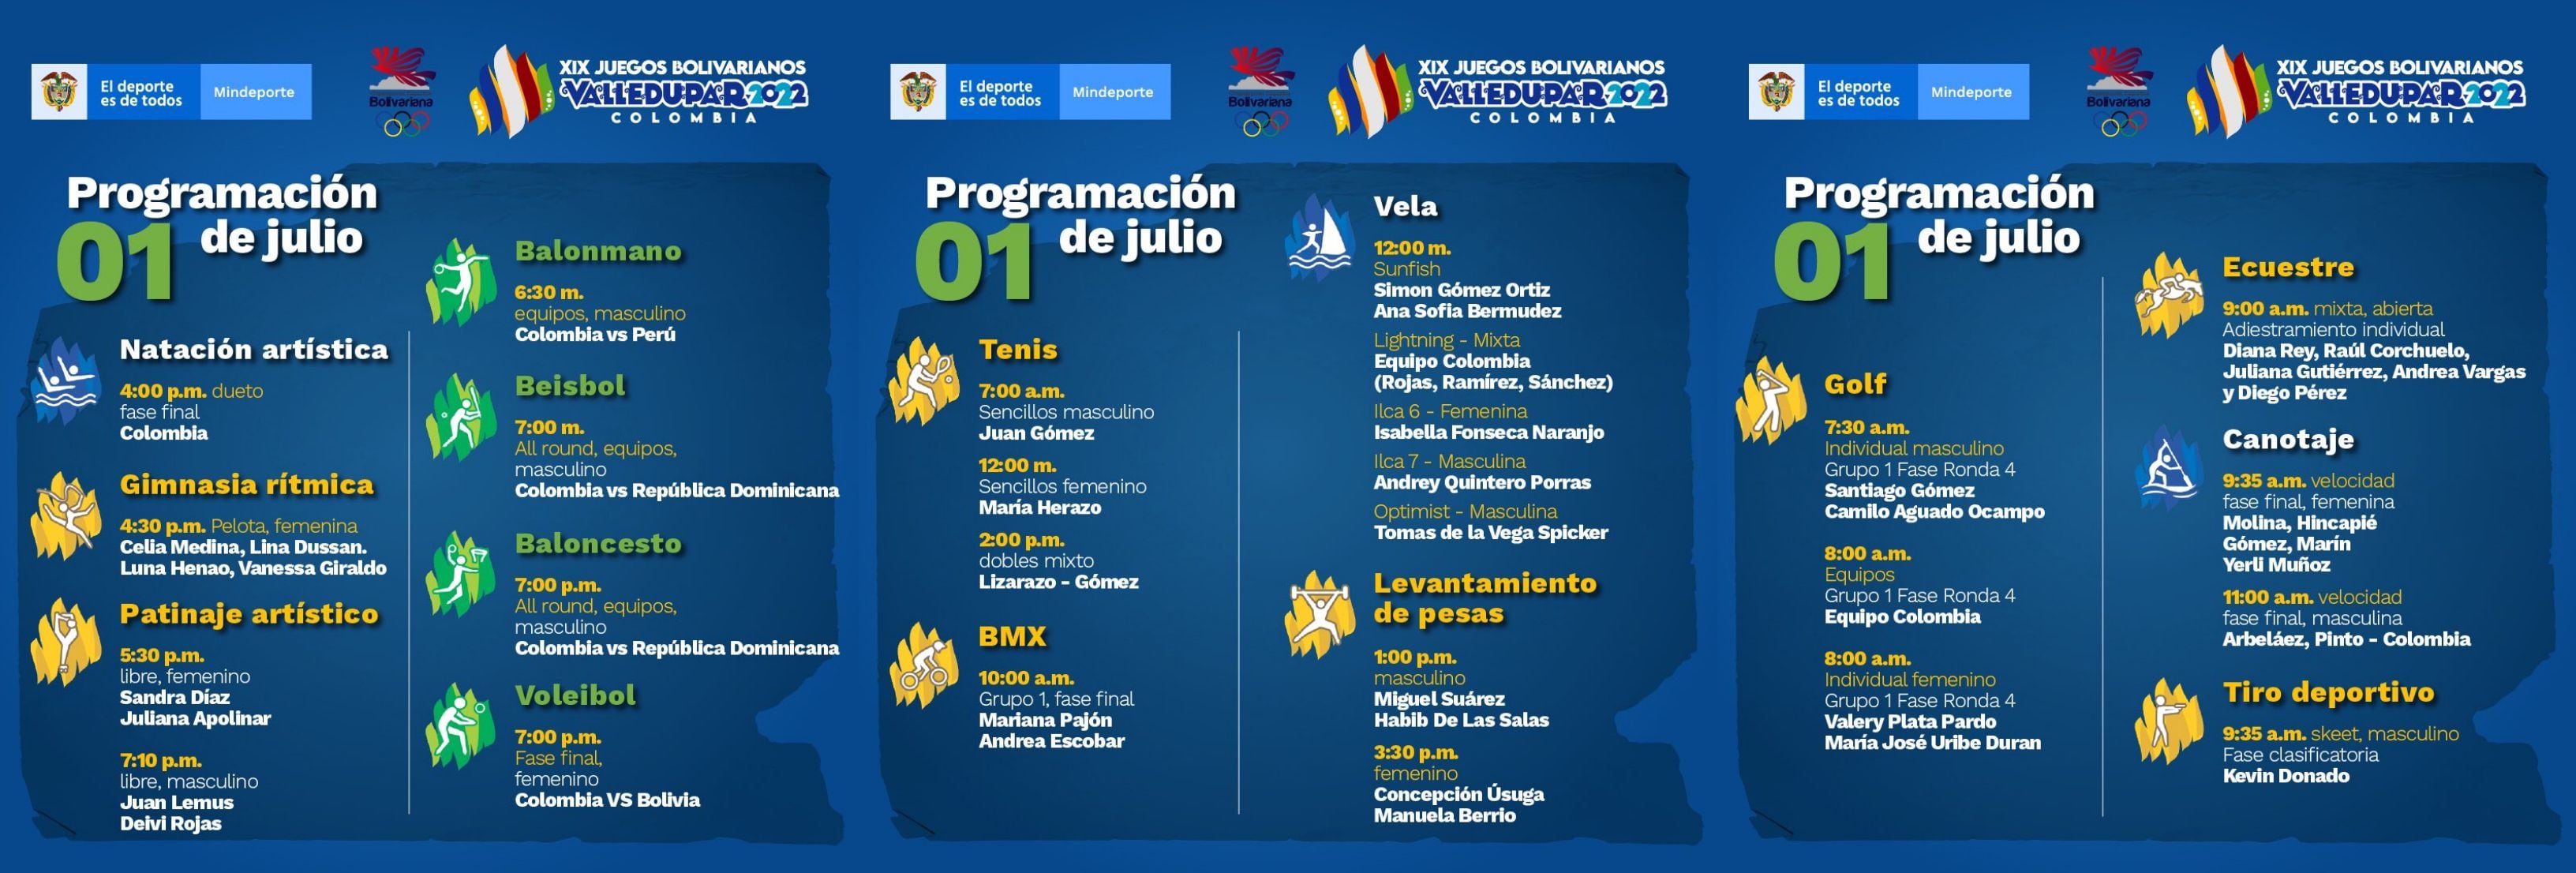 Colombia campeona del boxeo en los Juegos Bolivarianos Valledupar 2022